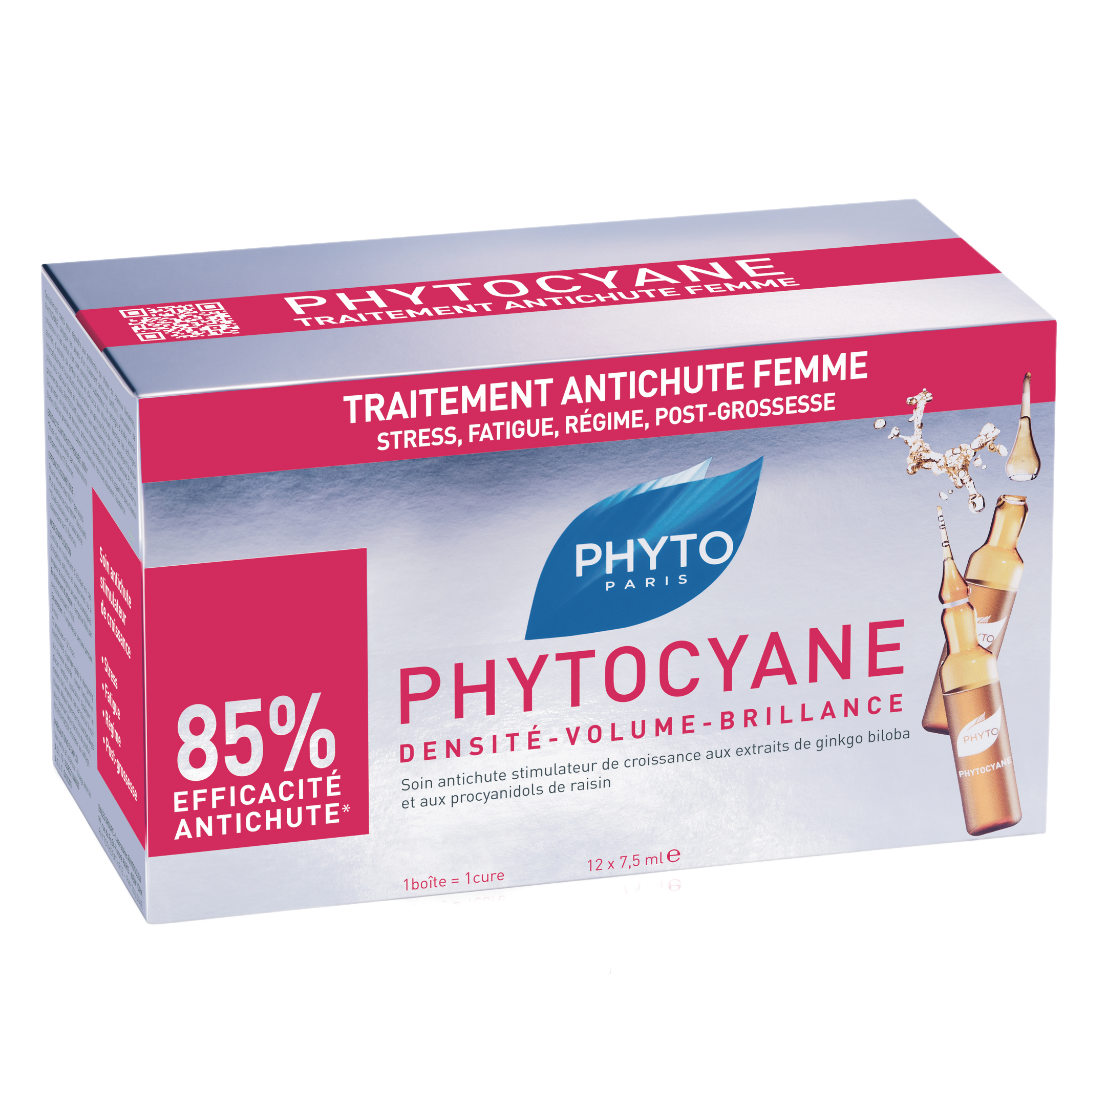 Засіб проти випадання волосся Phyto Phytocyane, 12 шт. по 7,5 мл (Р1110) - фото 2